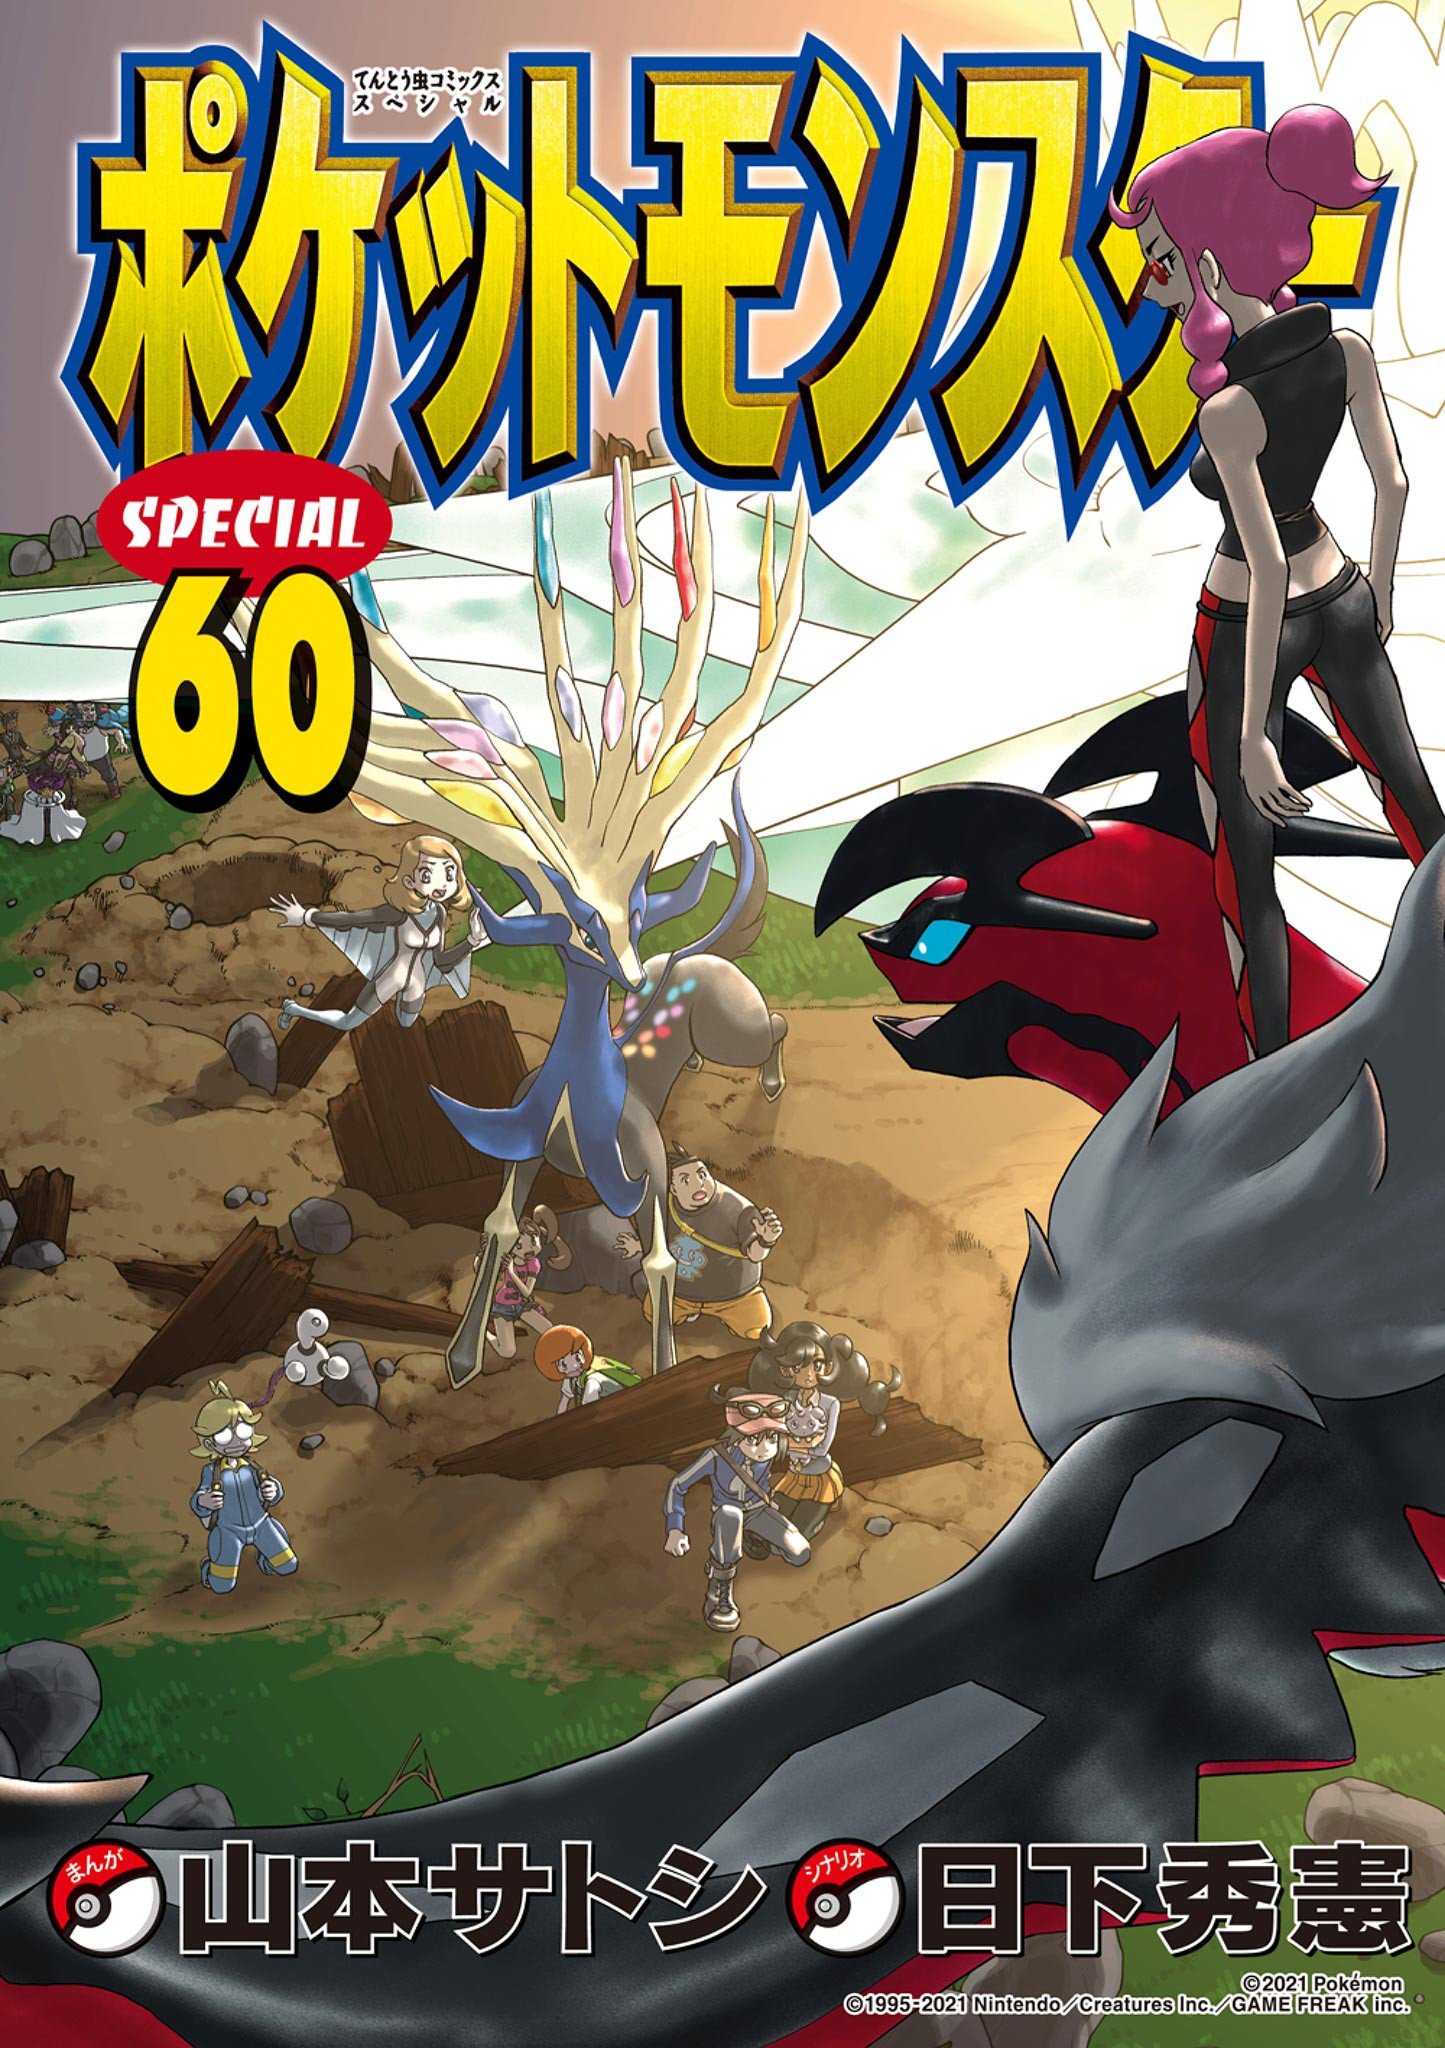 Pokémon Special cover 4